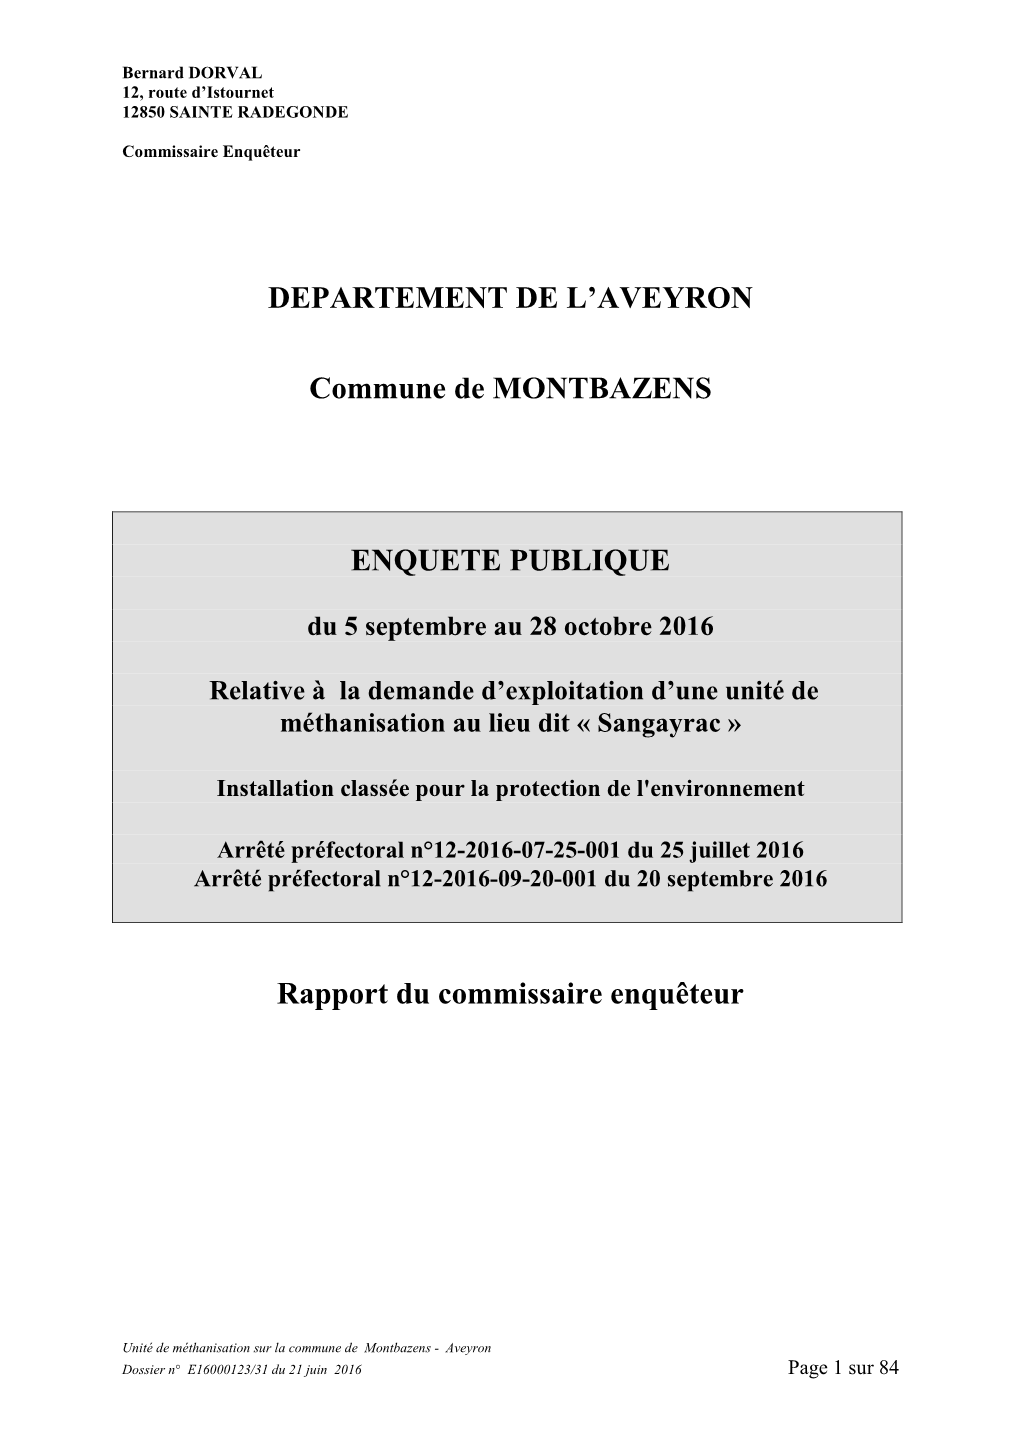 DEPARTEMENT DE L'aveyron Commune De MONTBAZENS